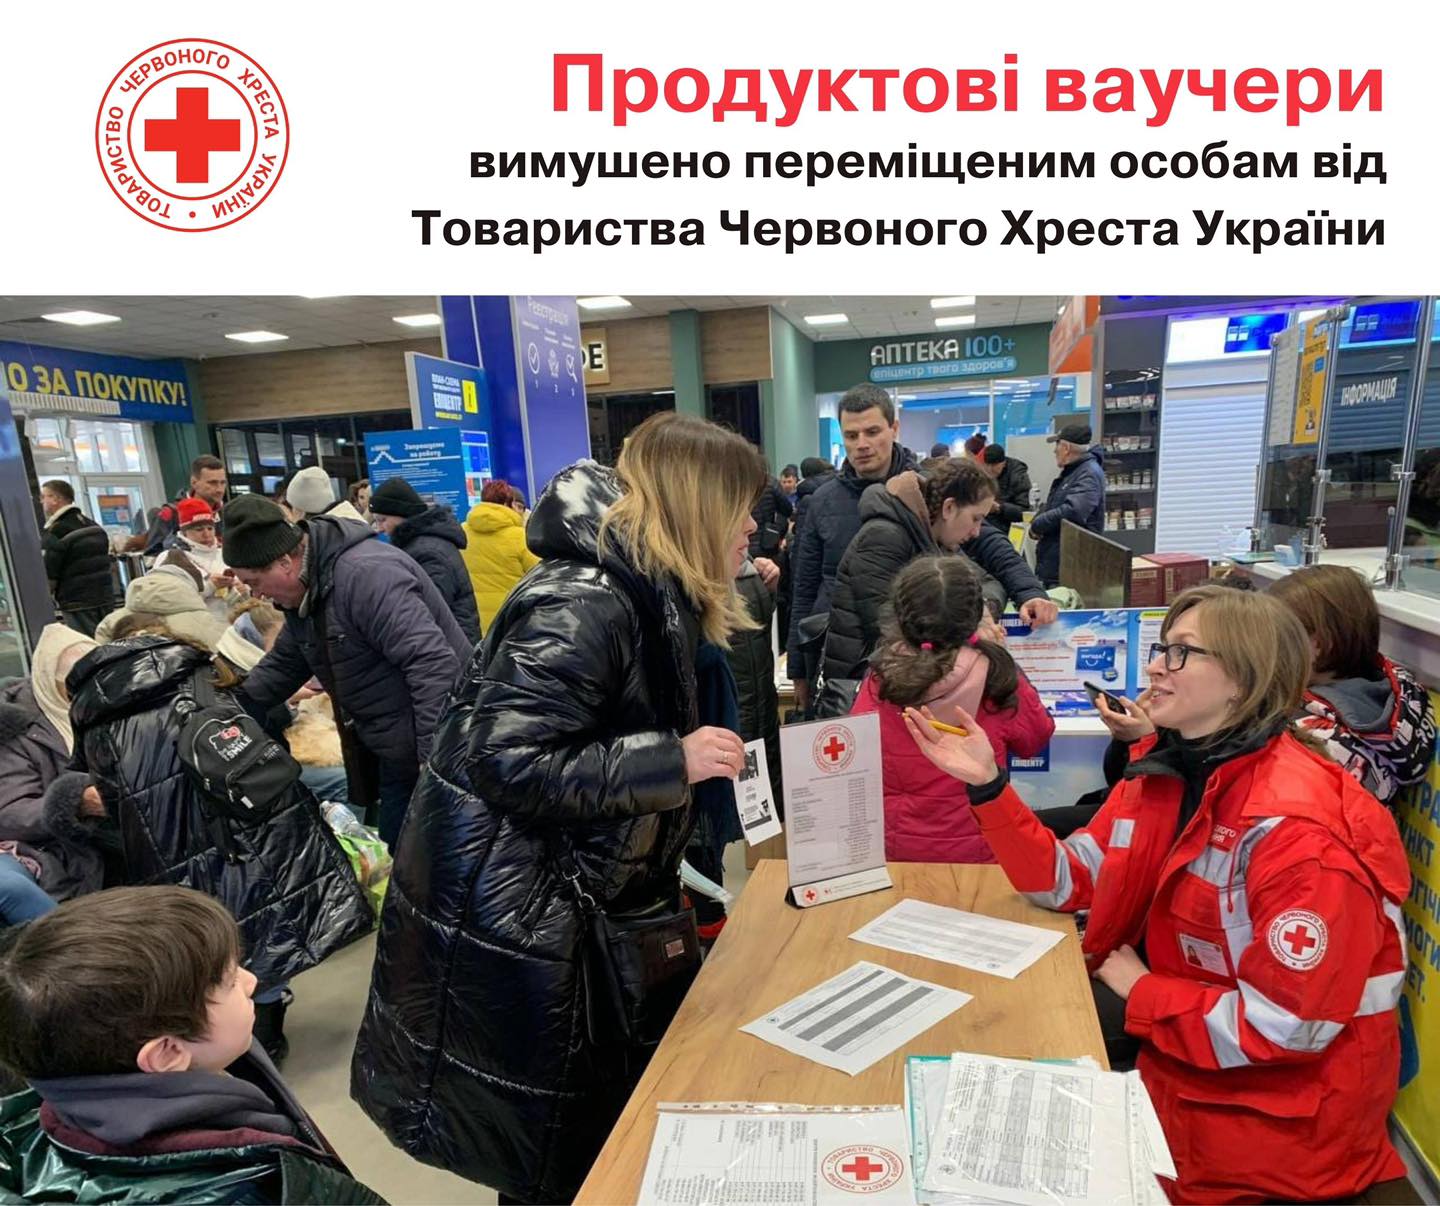 Червоний Хрест України видає продуктові ваучери вимушено переміщеним особам